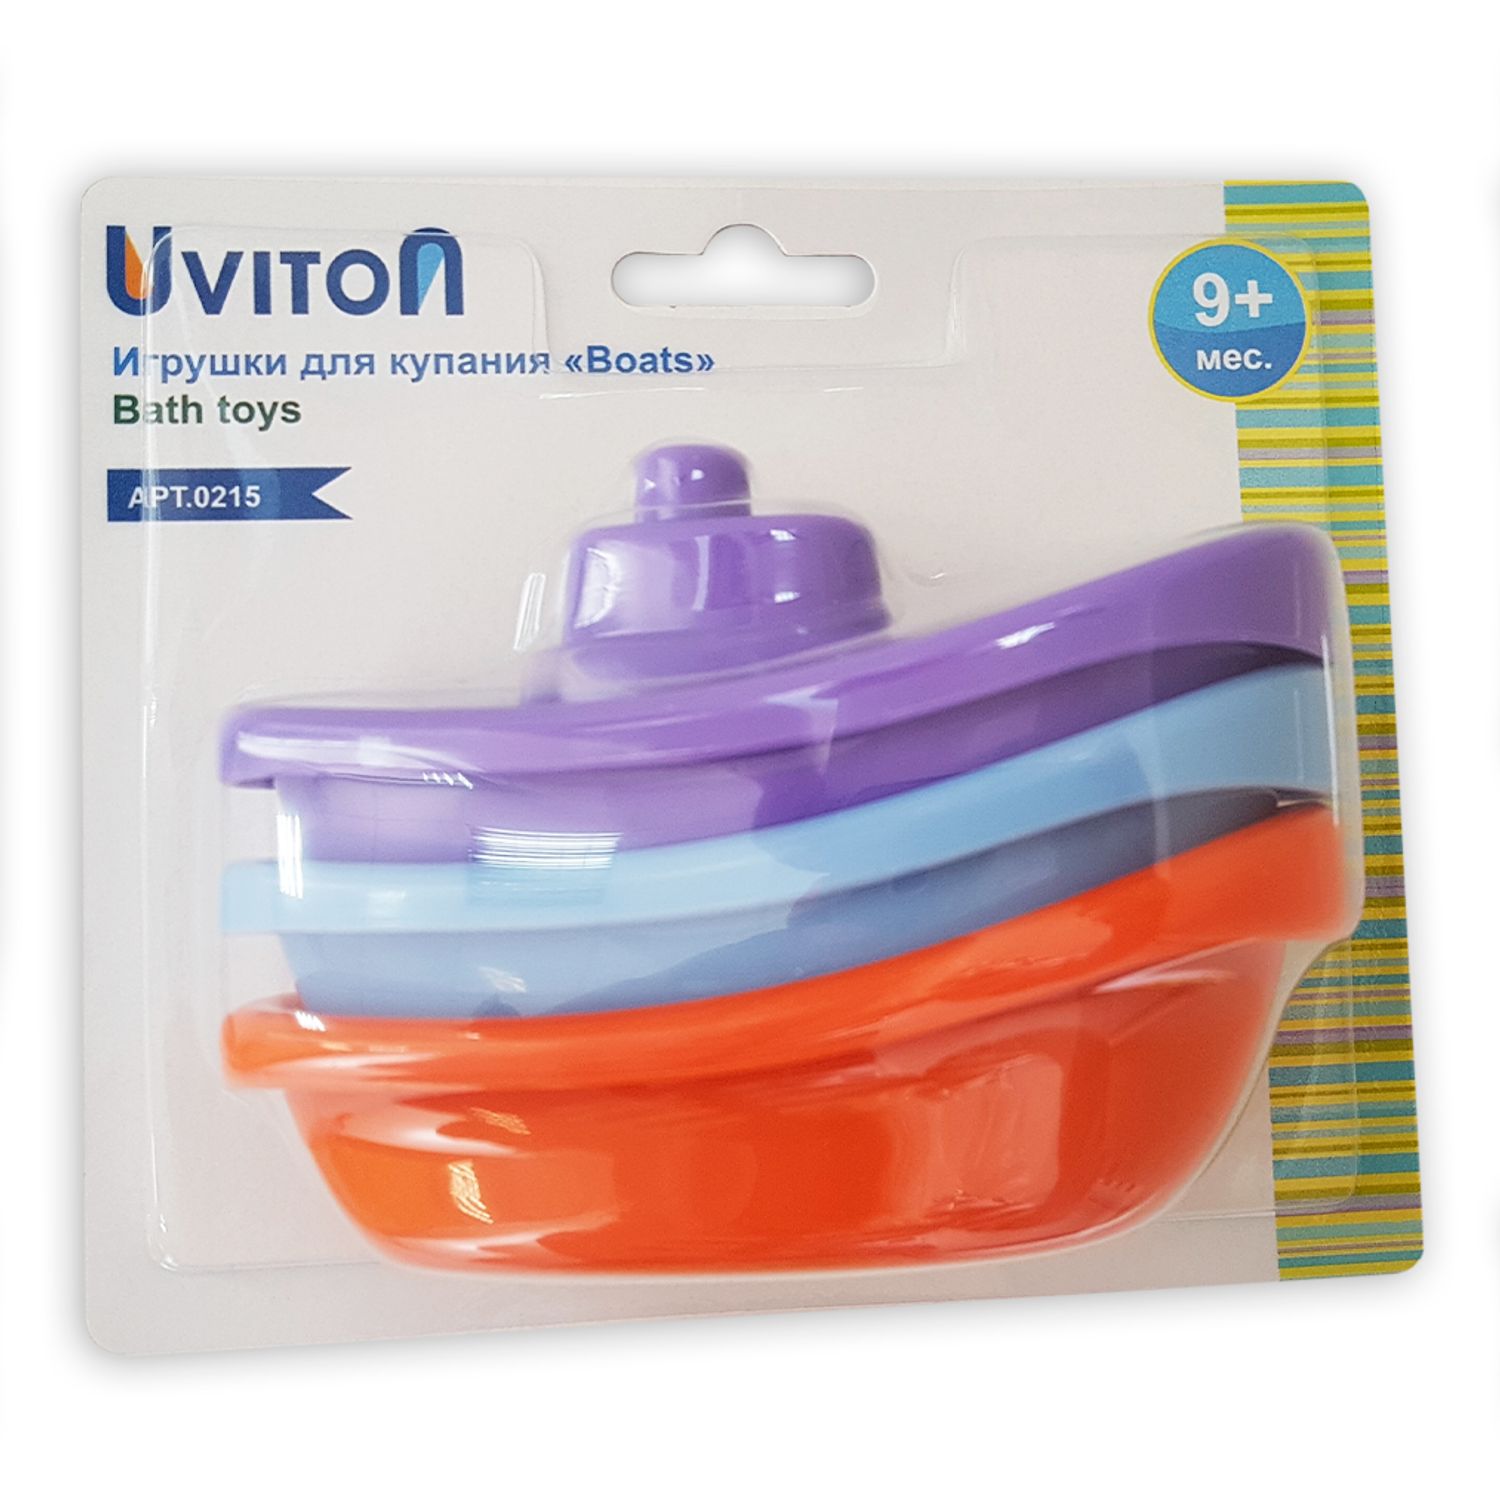 Игрушка Uviton для купания Boat набор 3шт - фото 2